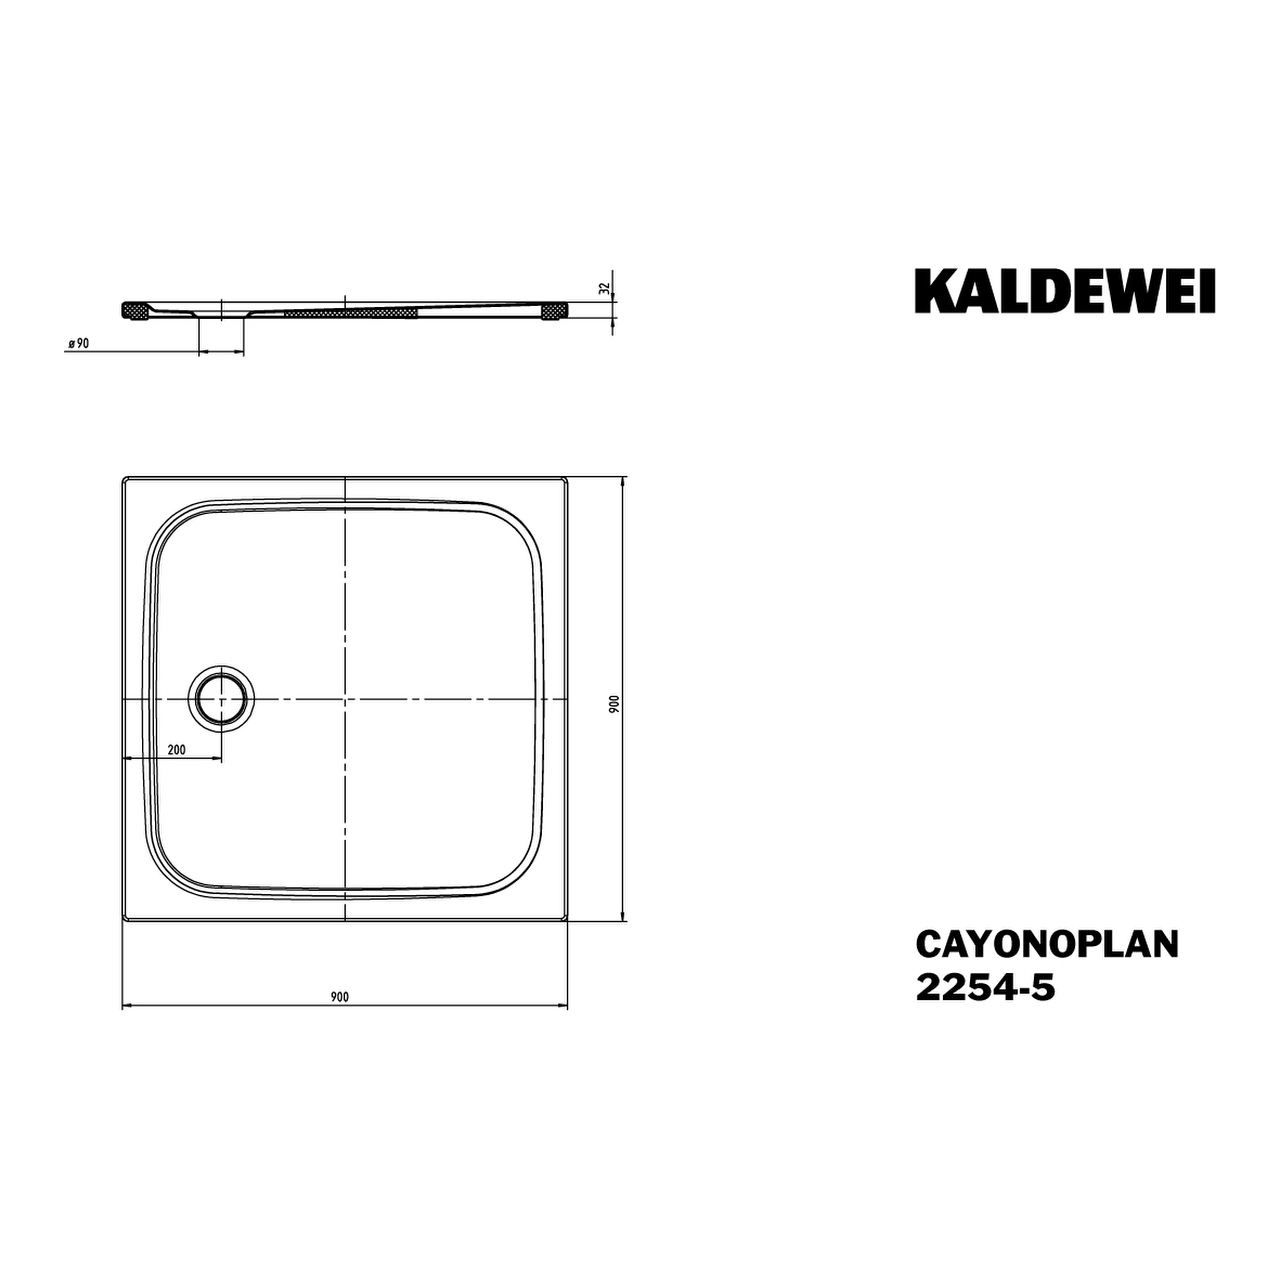 Kaldewei quadrat Duschwanne „Cayonoplan“ 90 × 90 cm in warm grey 50